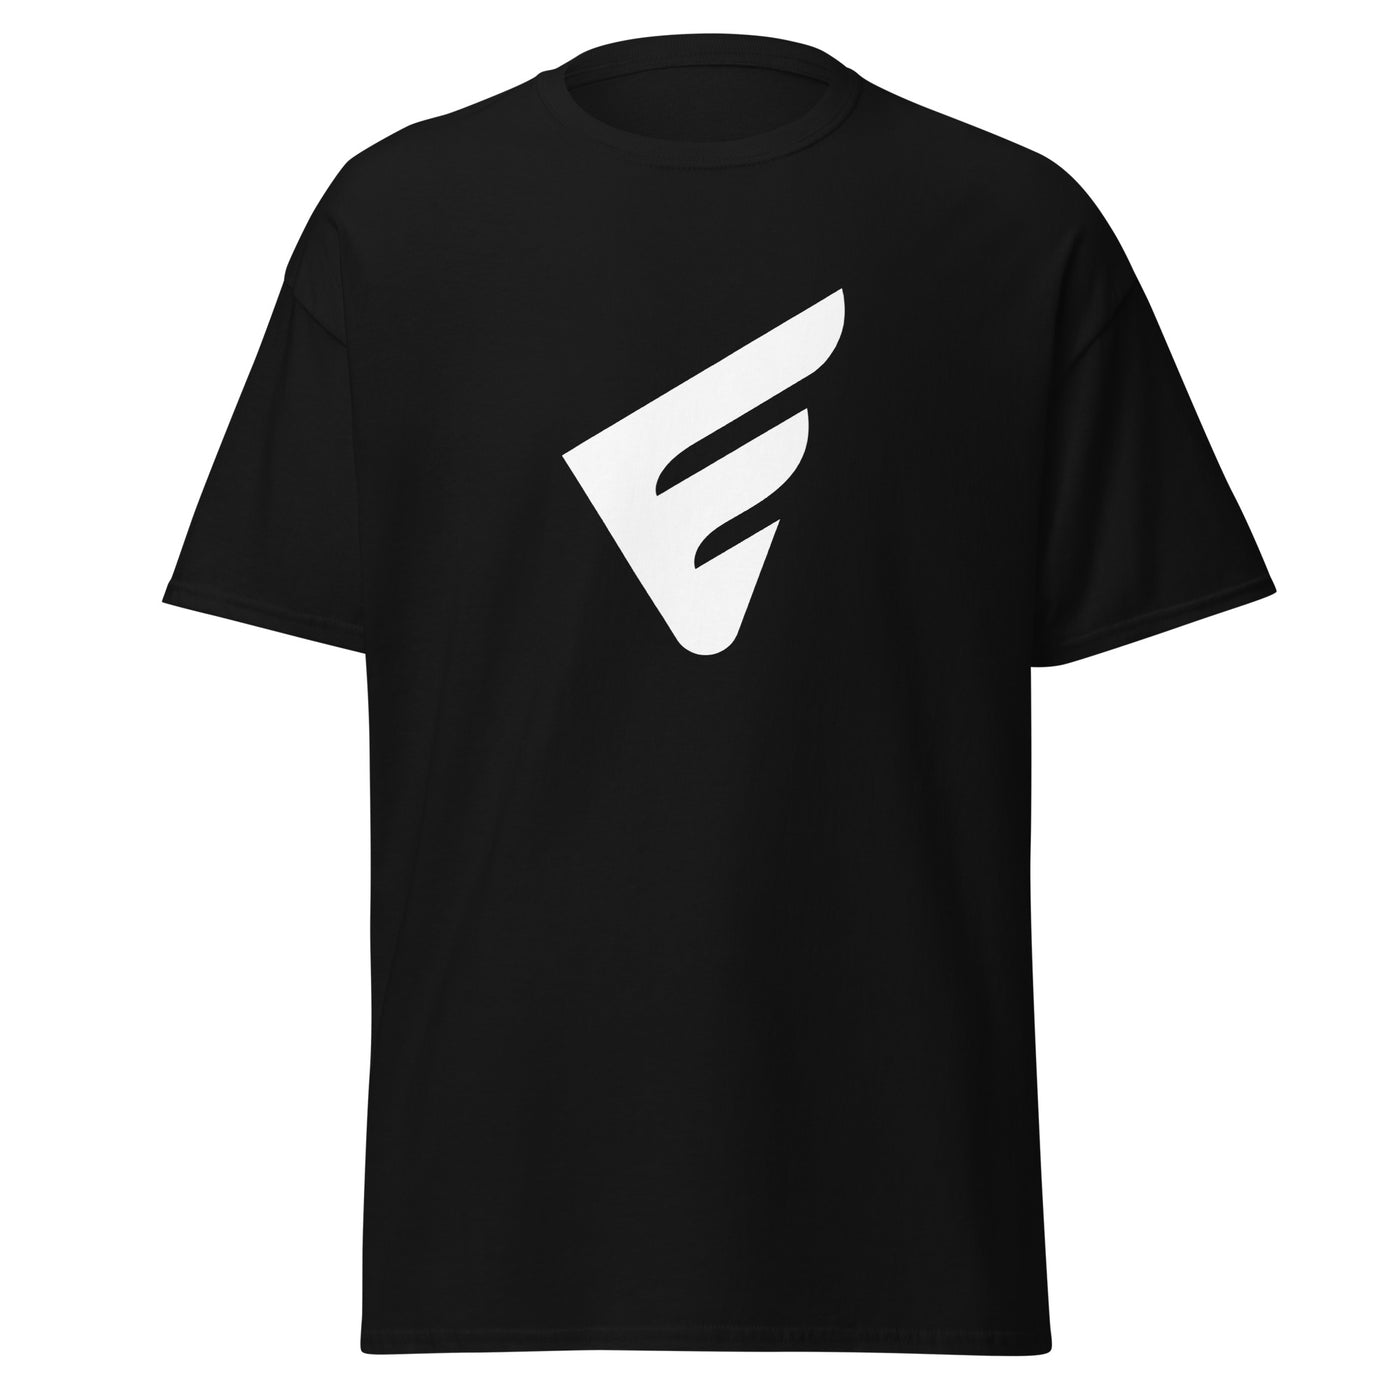 EGESPORTS Unisex Classic T-Shirt